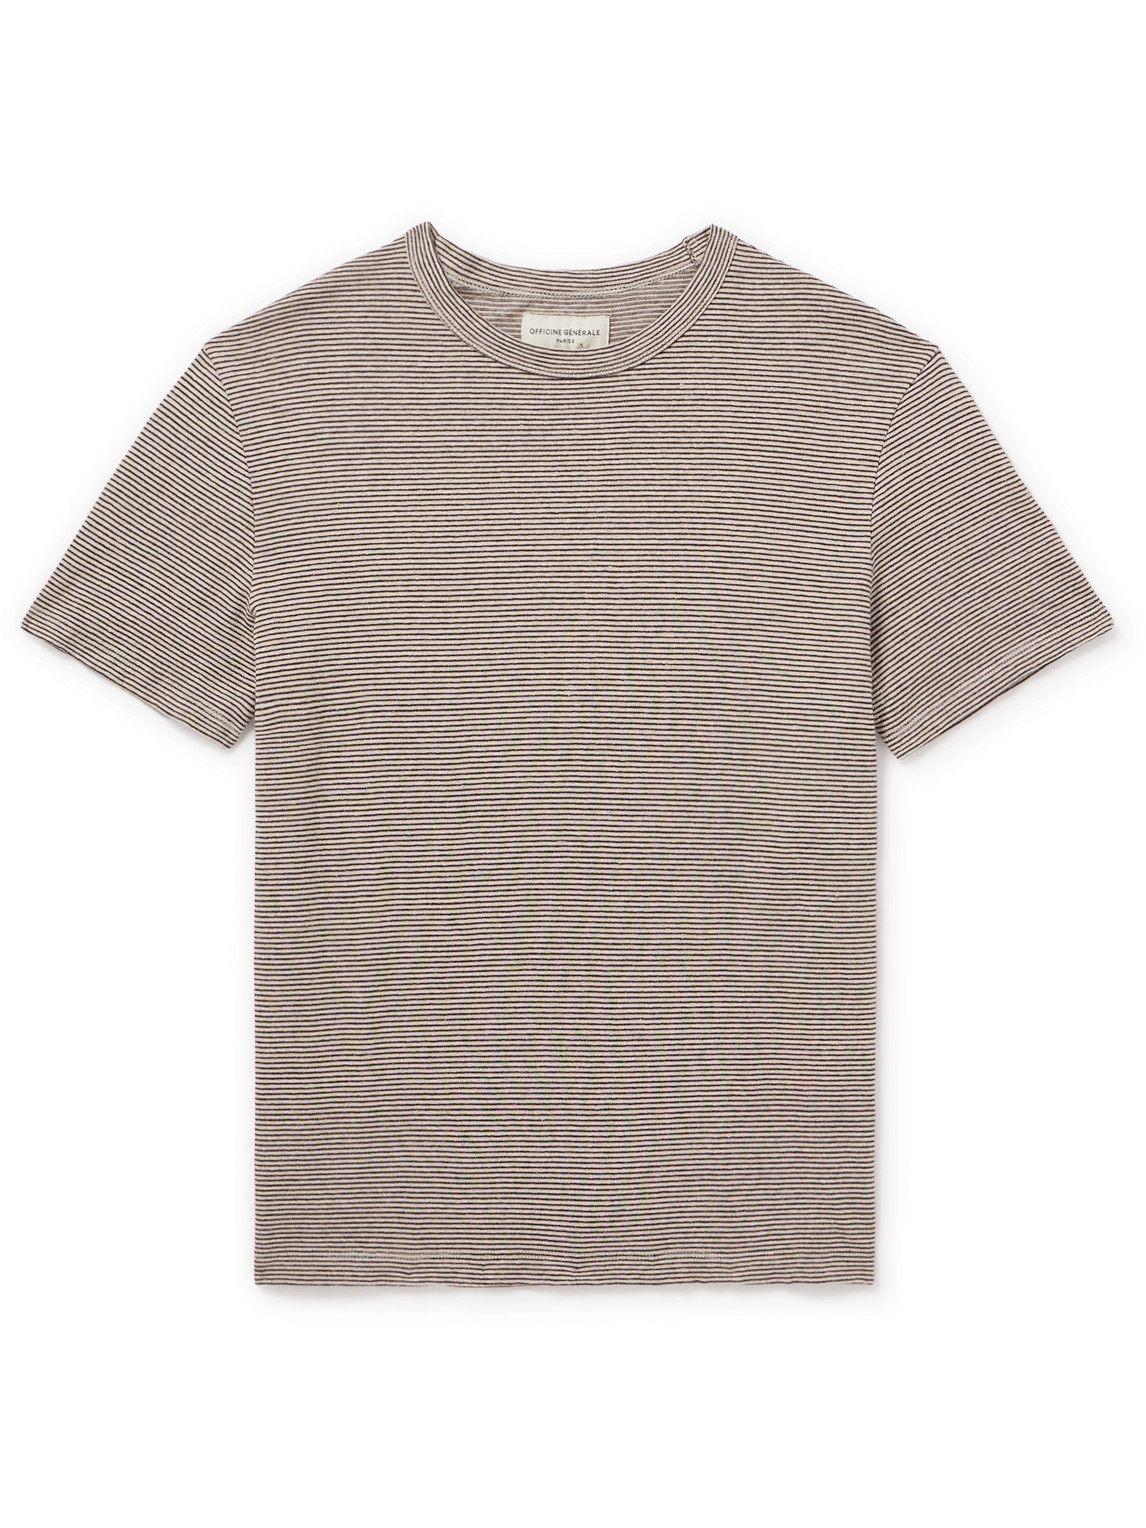 Officine Générale Striped Cotton and Linen-Blend Shirt